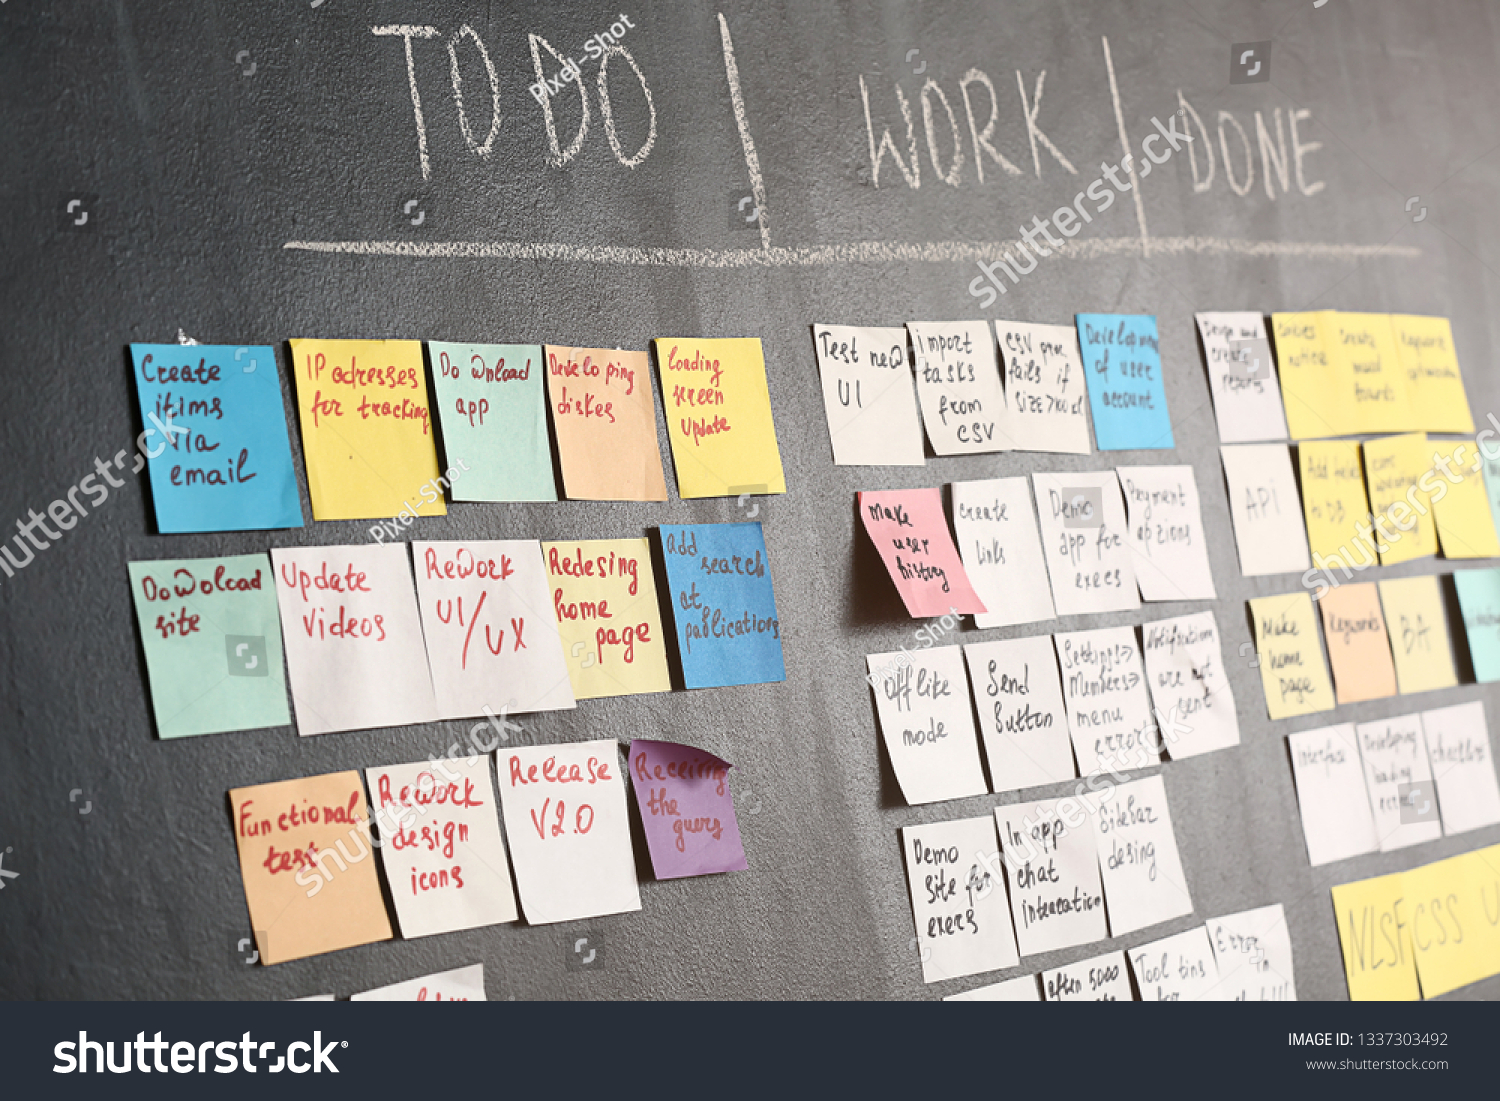 Scrum task board on dark wall in office #1337303492